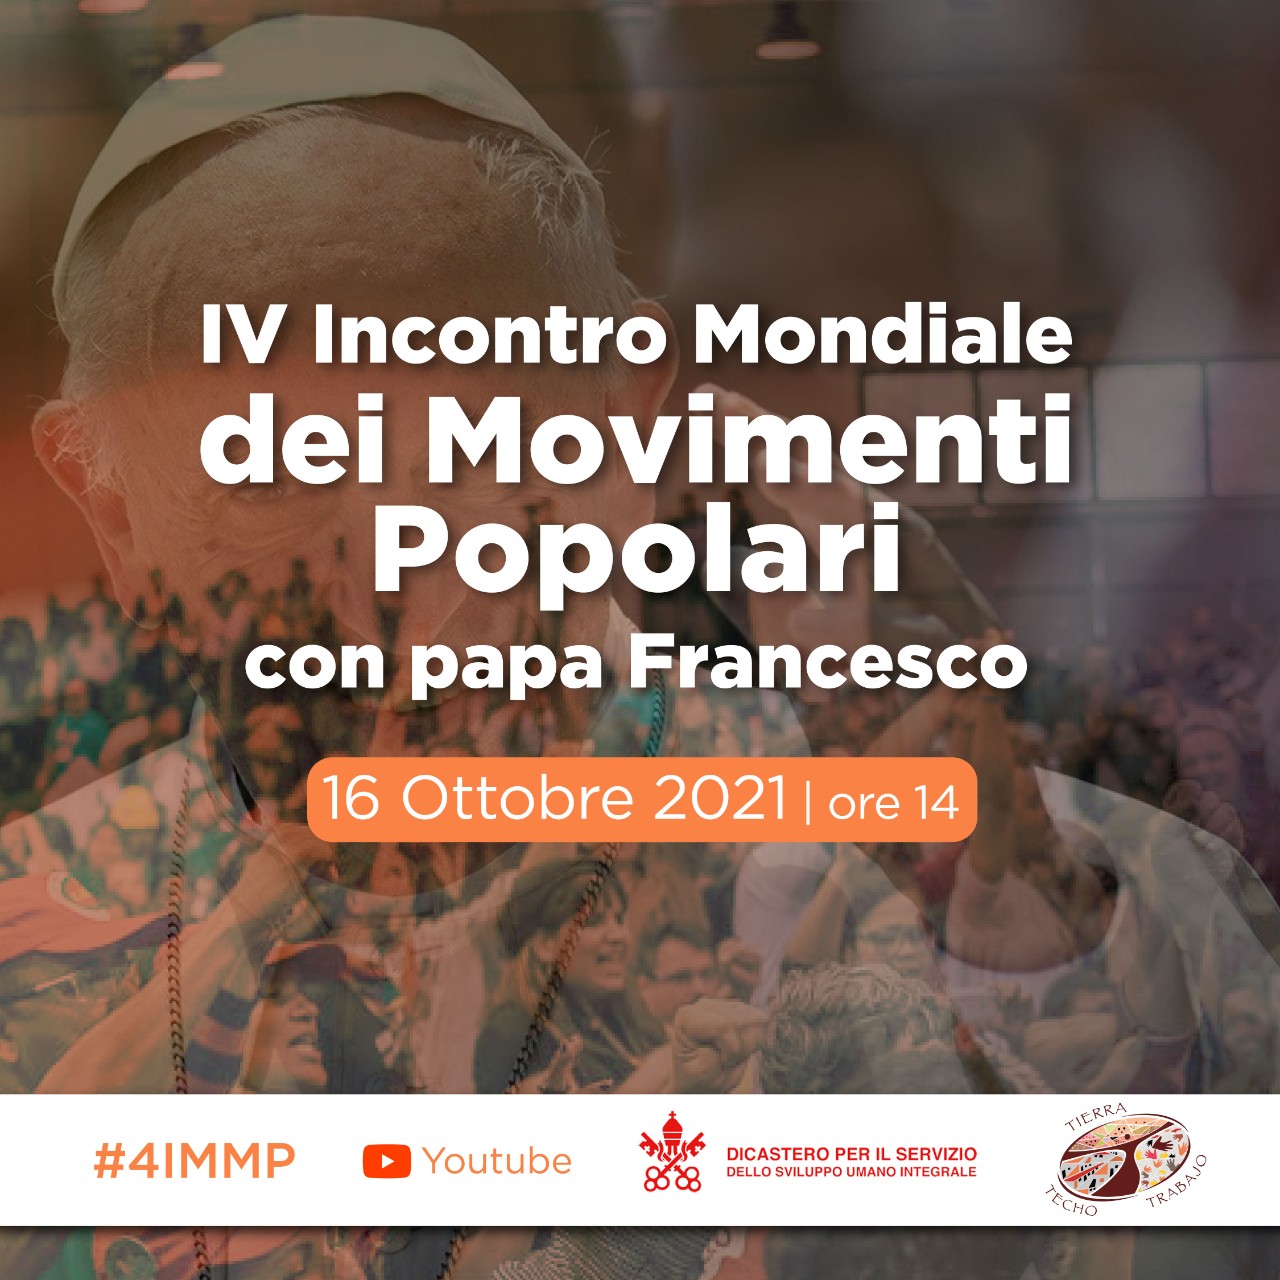 Papa Francesco partecipa alla seconda fase del IV Incontro Mondiale dei Movimenti Popolari (EMMP)